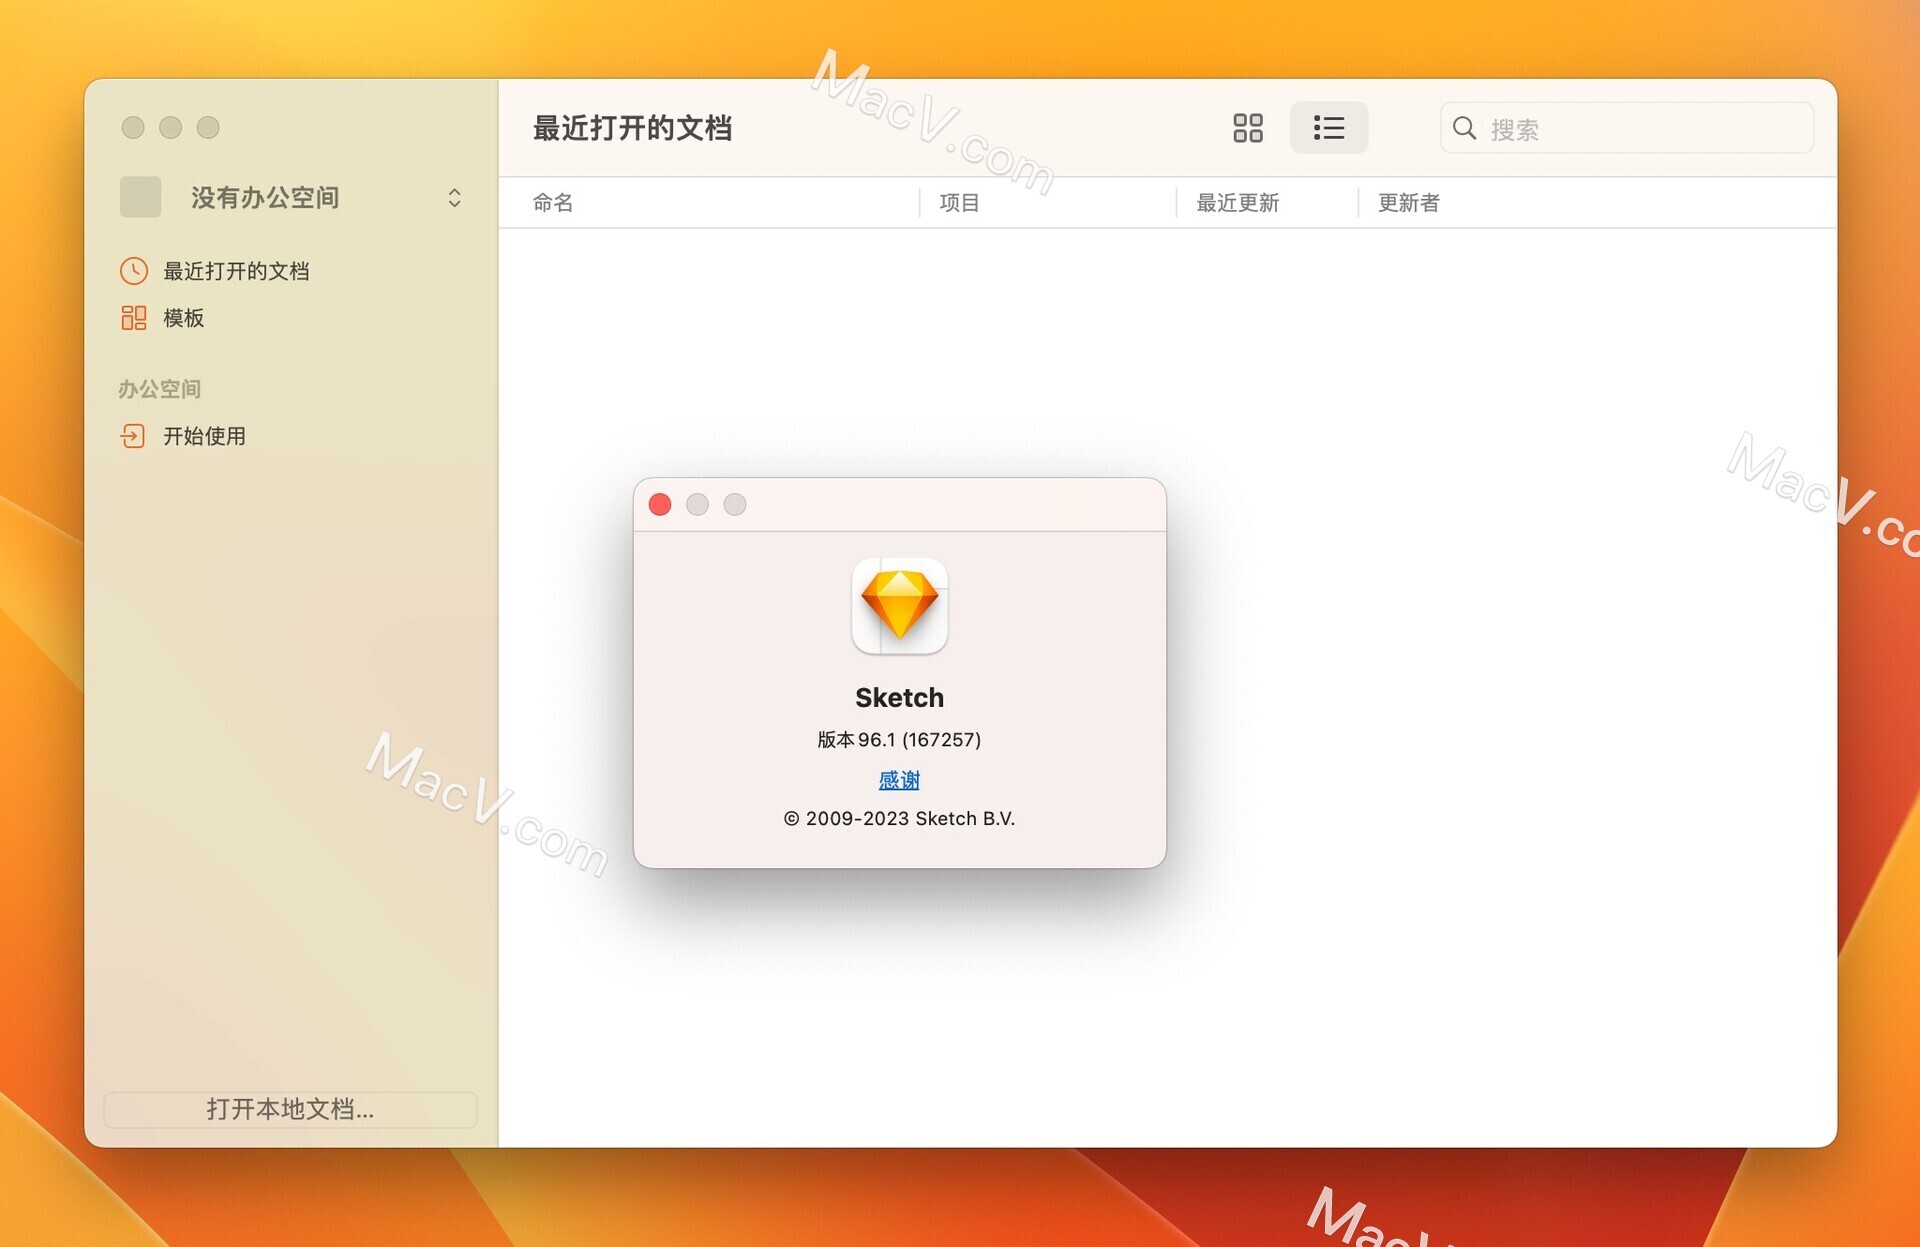 强大易用的矢量图形设计工具Sketch v96.1最新中文版